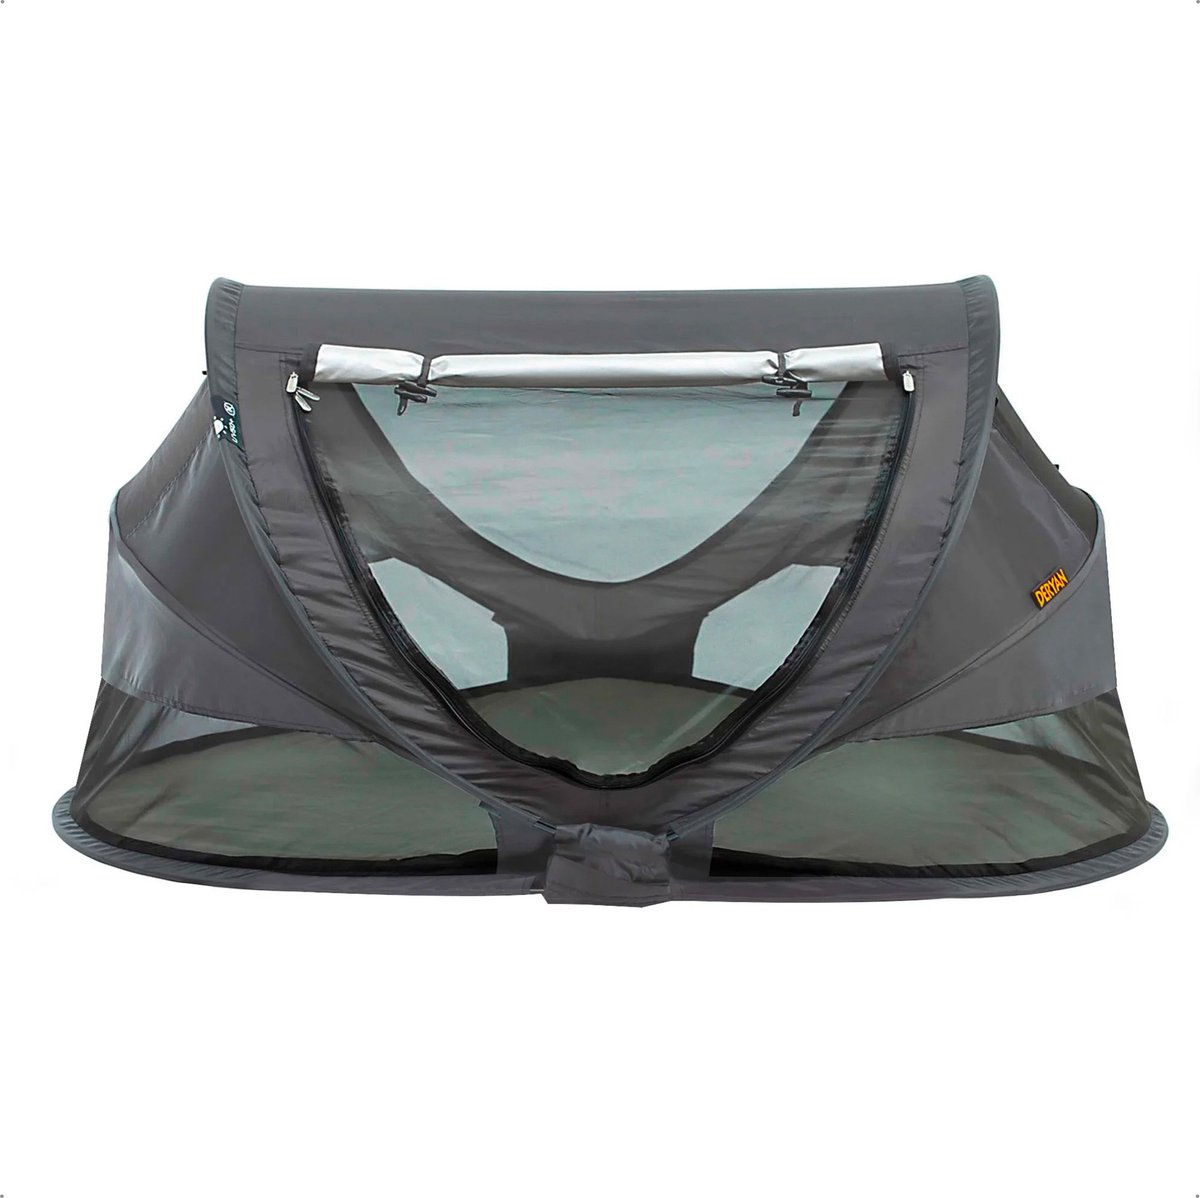 Deryan Peuter Luxe Campingbedje – Inclusief zelfopblaasbare matras - Donker grijs